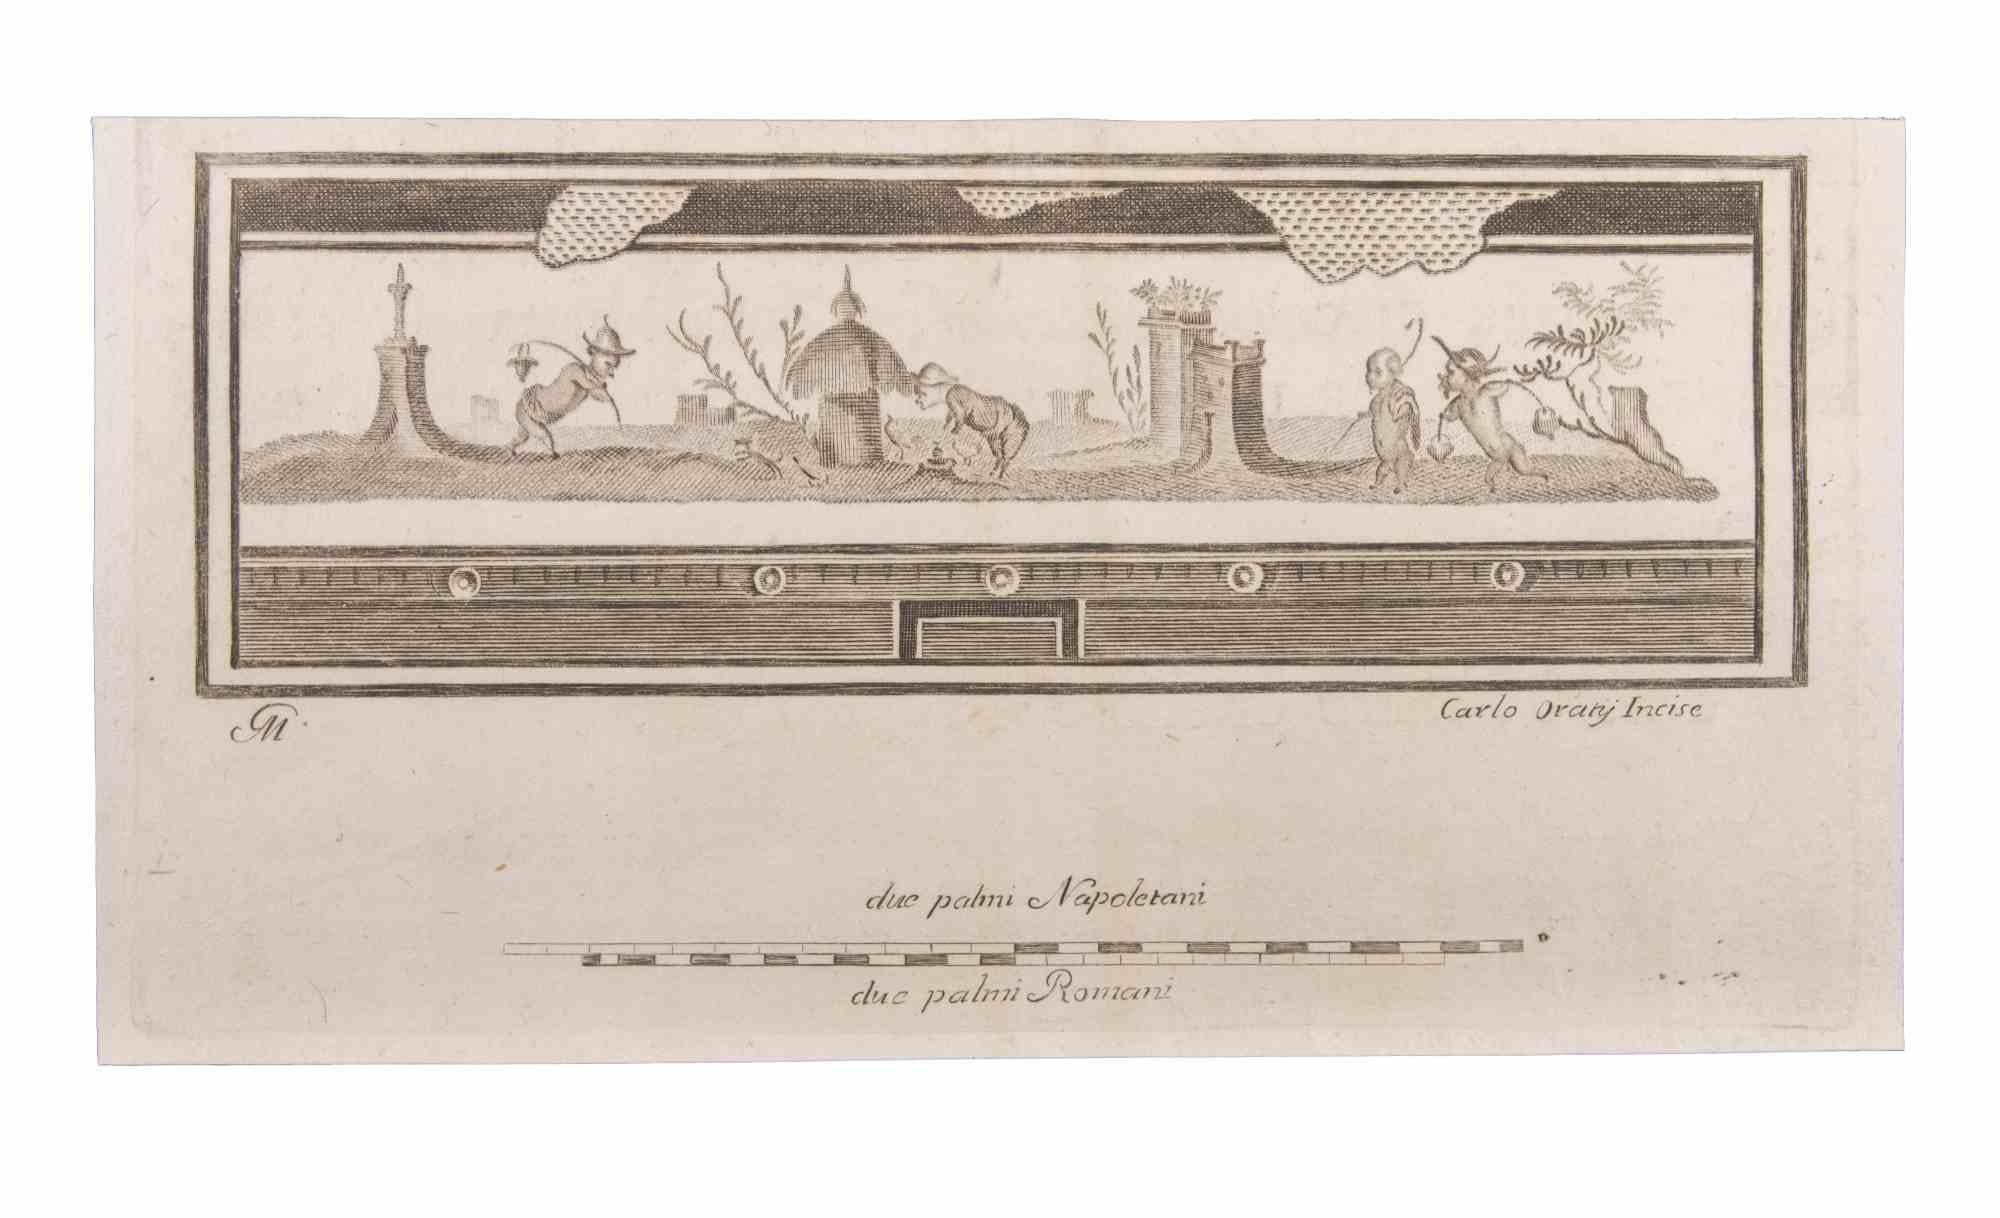 Landscape With Figures and Animals ist eine Radierung realisiert von  Carlo Oraty (18. Jahrhundert).

Die Radierung gehört zu der Druckserie "Antiquities of Herculaneum Exposed" (Originaltitel: "Le Antichità di Ercolano Esposte"), einem achtbändigen